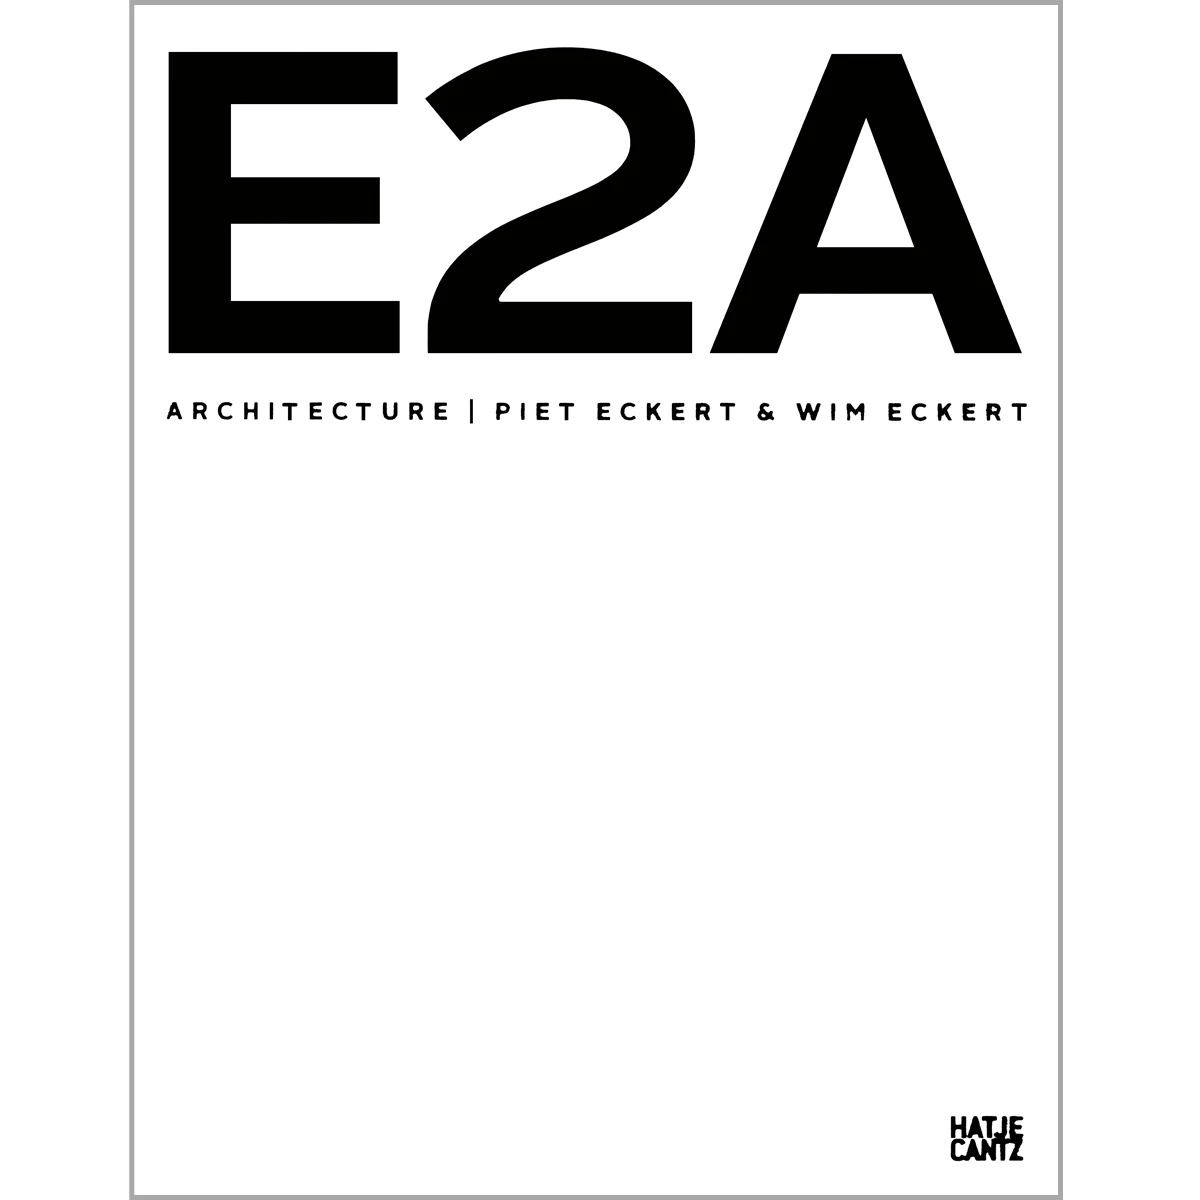 E2A Architecture